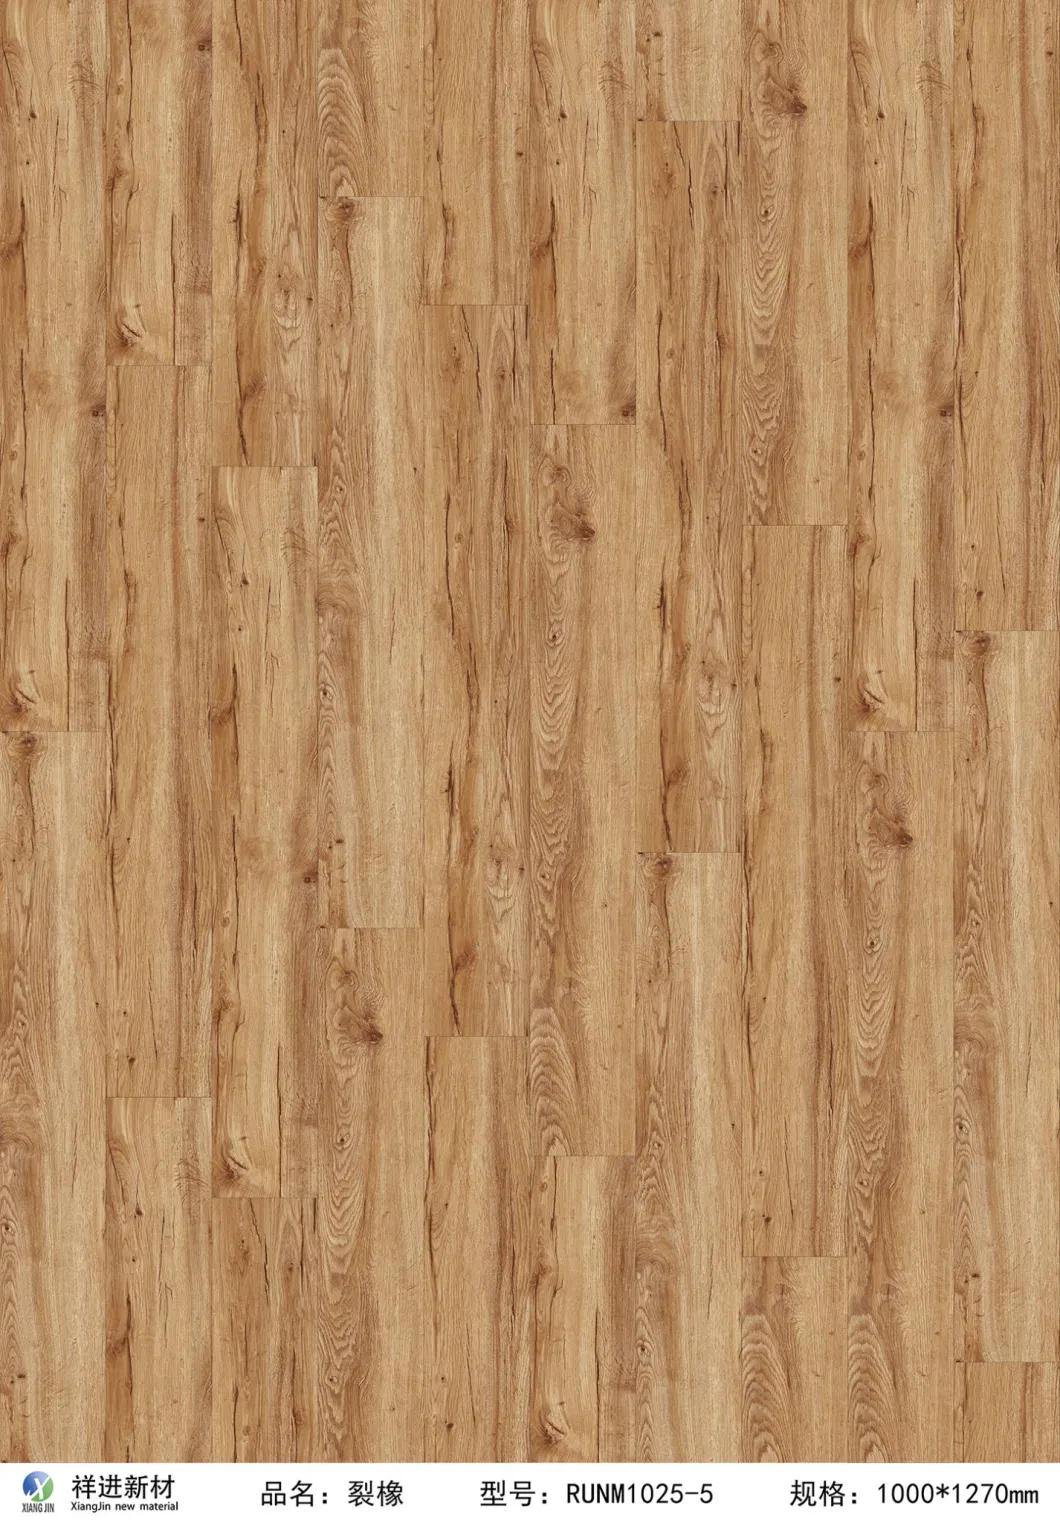 Home Decoration AC3/AC4/AC5 Click Lock MDF/HDF 7mm/8mm/10mm/12mm Home Decoration Building Materials Waterproof Strip IXPE/EVA Floor Mat Composite Laminated Wood